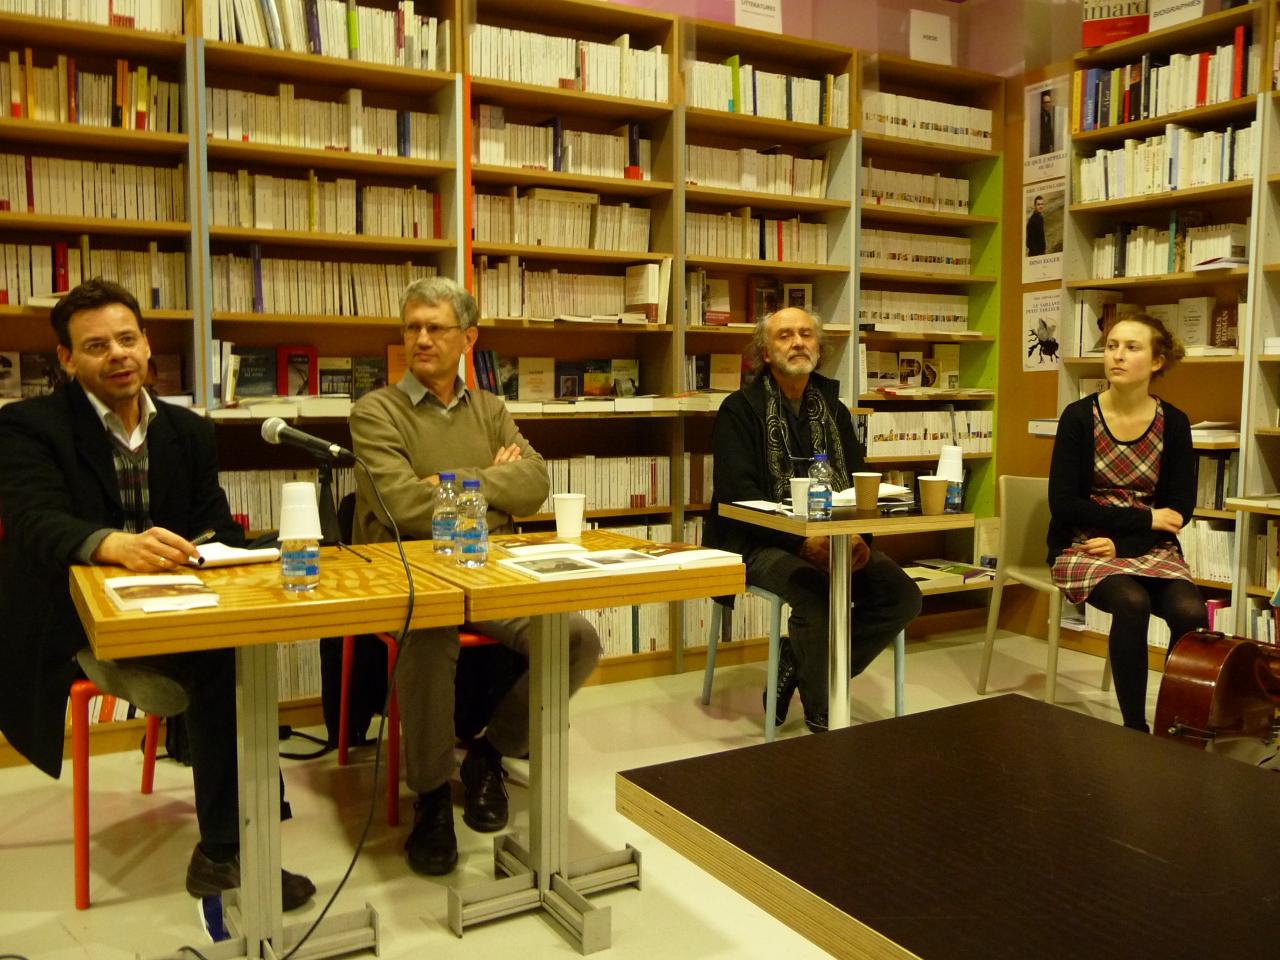 06/12/2011, Librairie Etudes, Toulouse (avec Patrick Marot, Yves Gourmelon, Oriane Fohr)